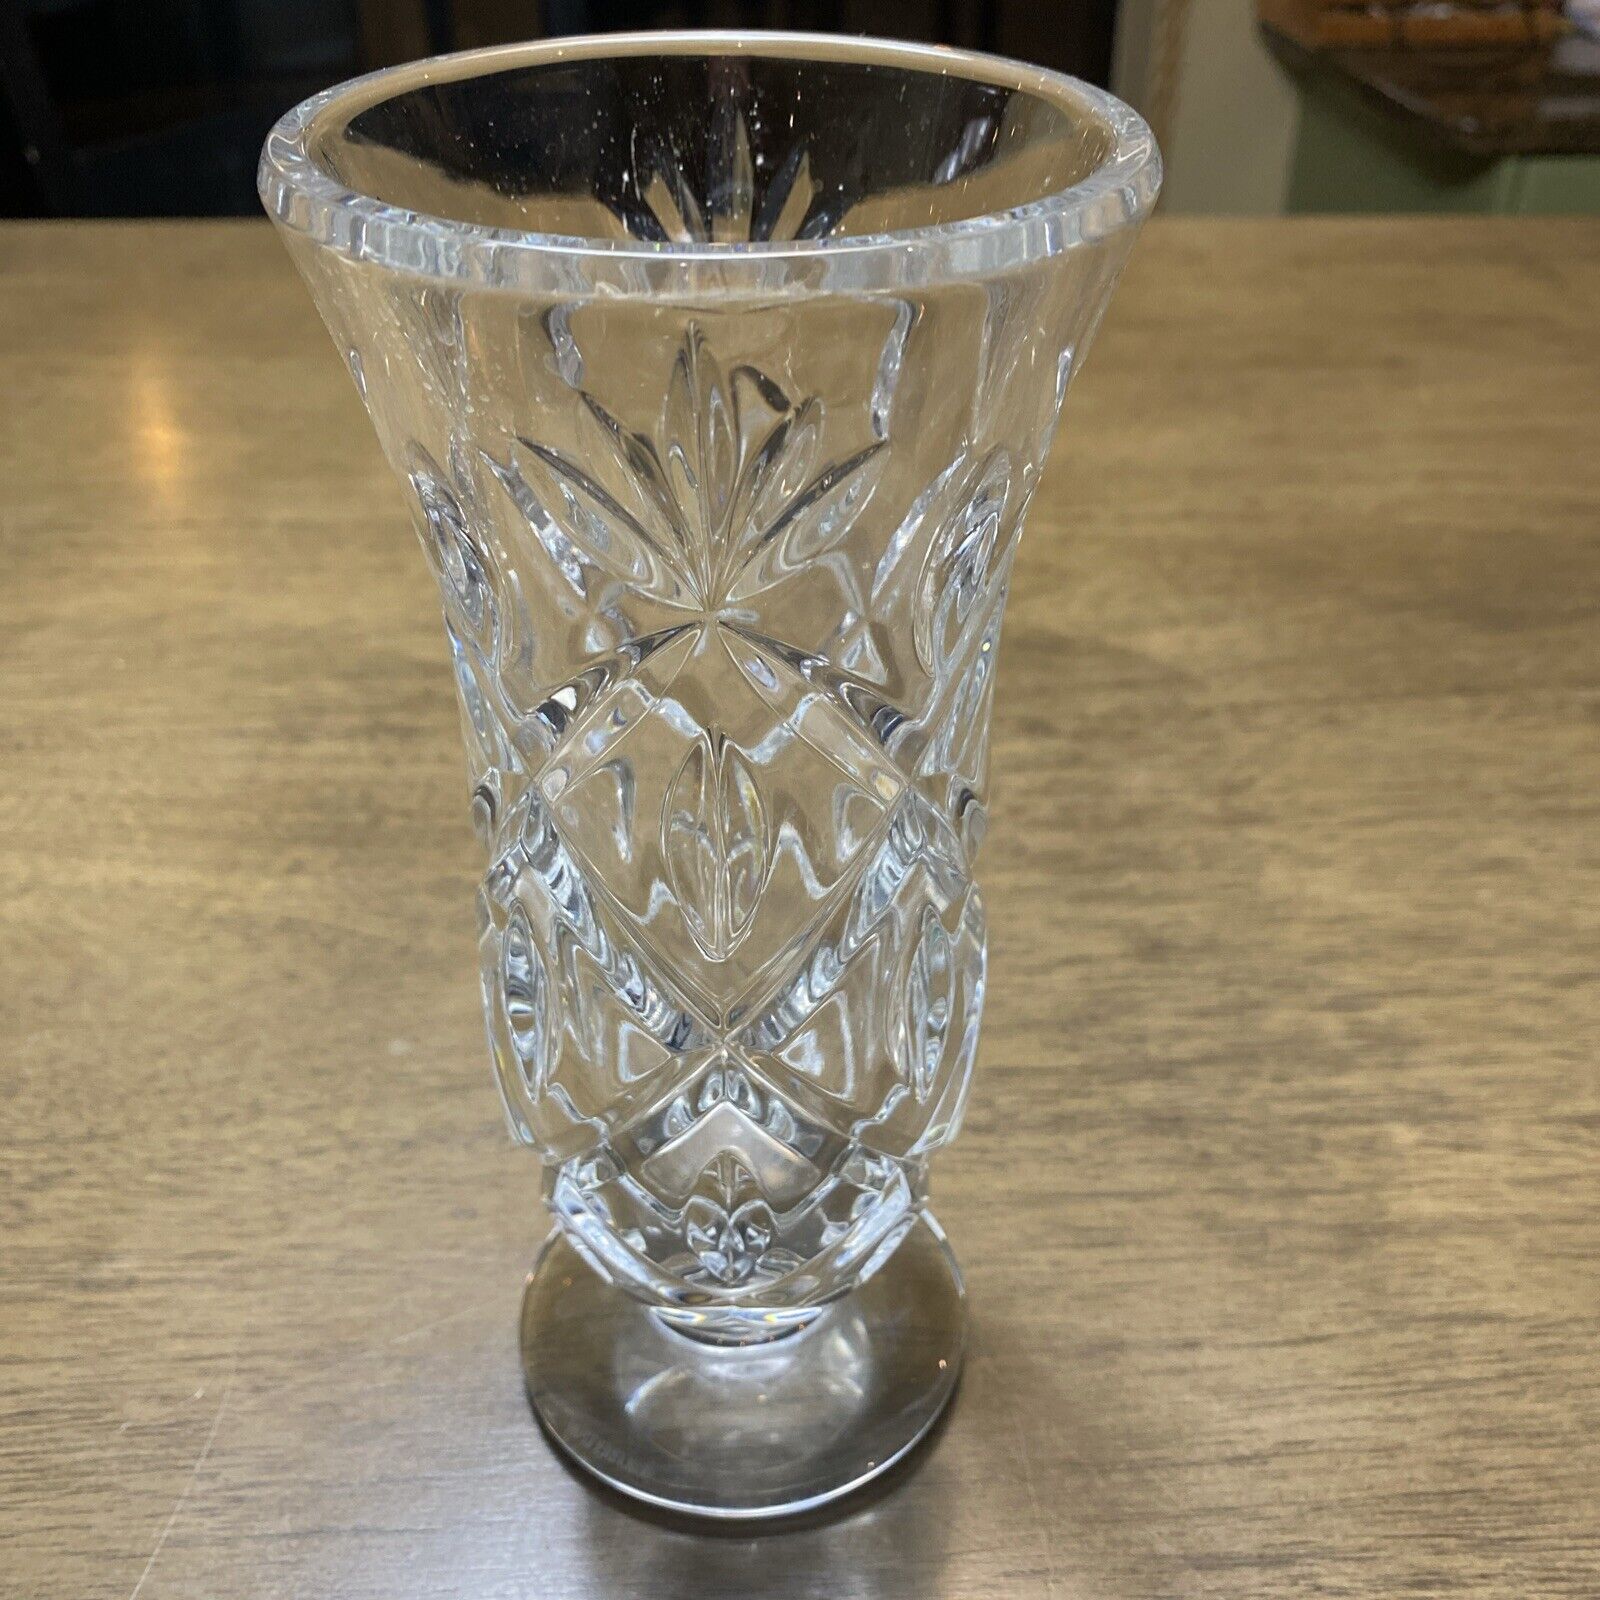 Waterford Crystal Footed Flower Vase - 8”